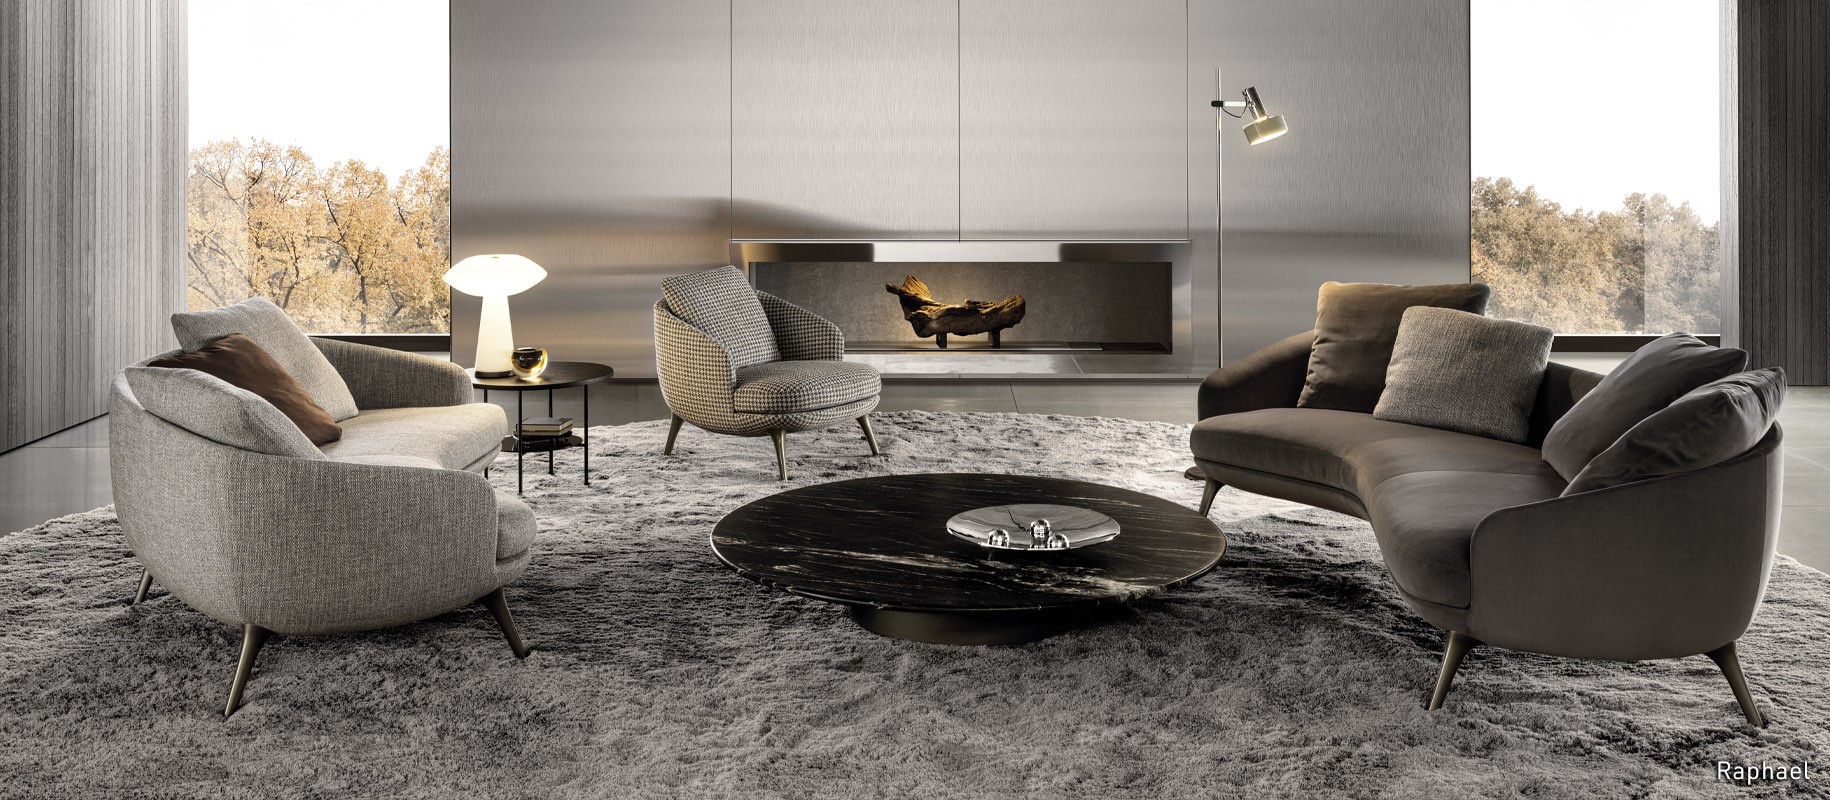 <p>En 2023, el dúo Gamfratesi firma la familia de sillas <strong>Raphael</strong>: un mobiliario compacto de refinada confección capaz de convertirse en protagonista del espacio, expresión de una nueva forma de construir la sala de estar.</p>
